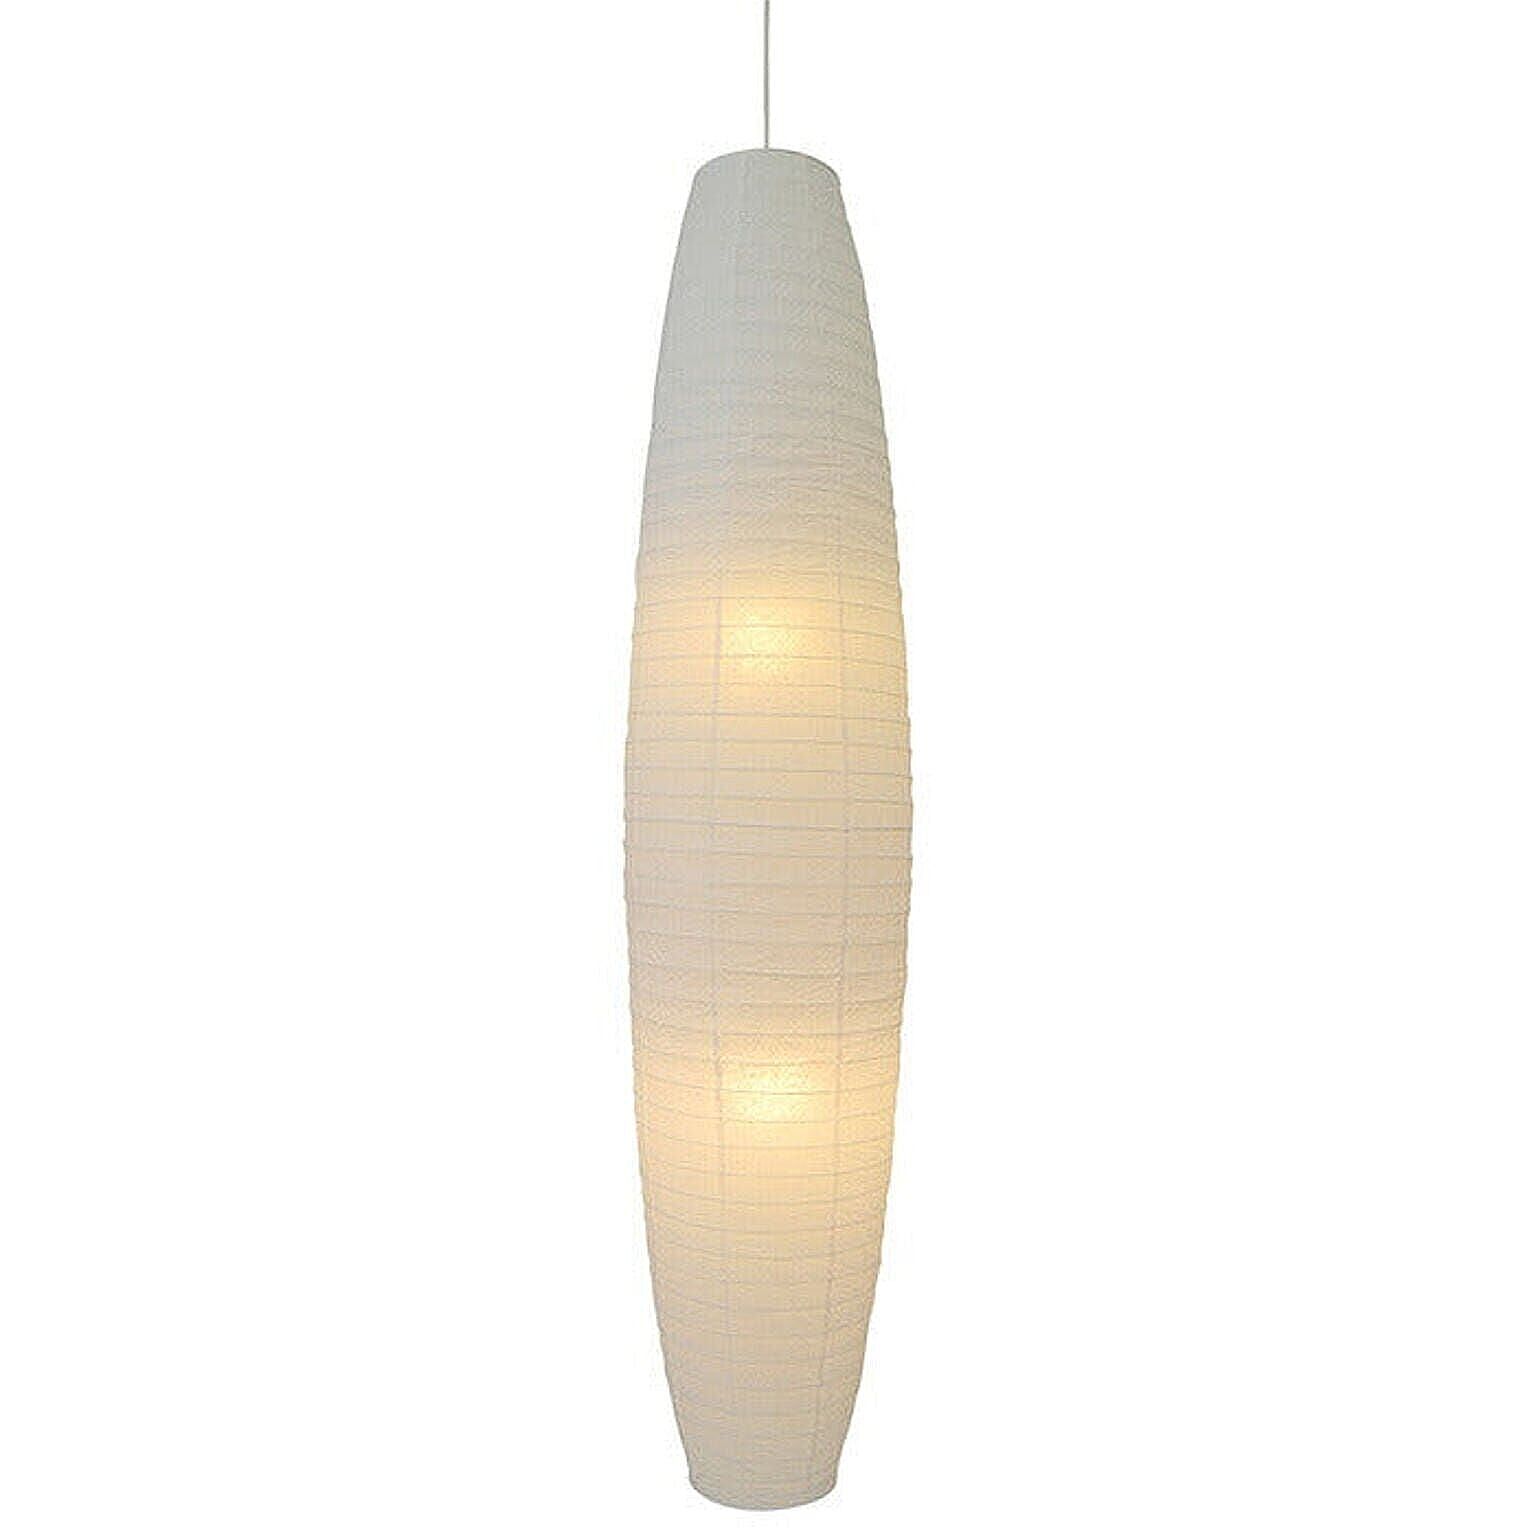 2灯 和紙 ペンダントライト larva 揉み紙N 電球付属なし シェードサイズ 幅320x奥行320x高さ1400mm 彩光デザイン